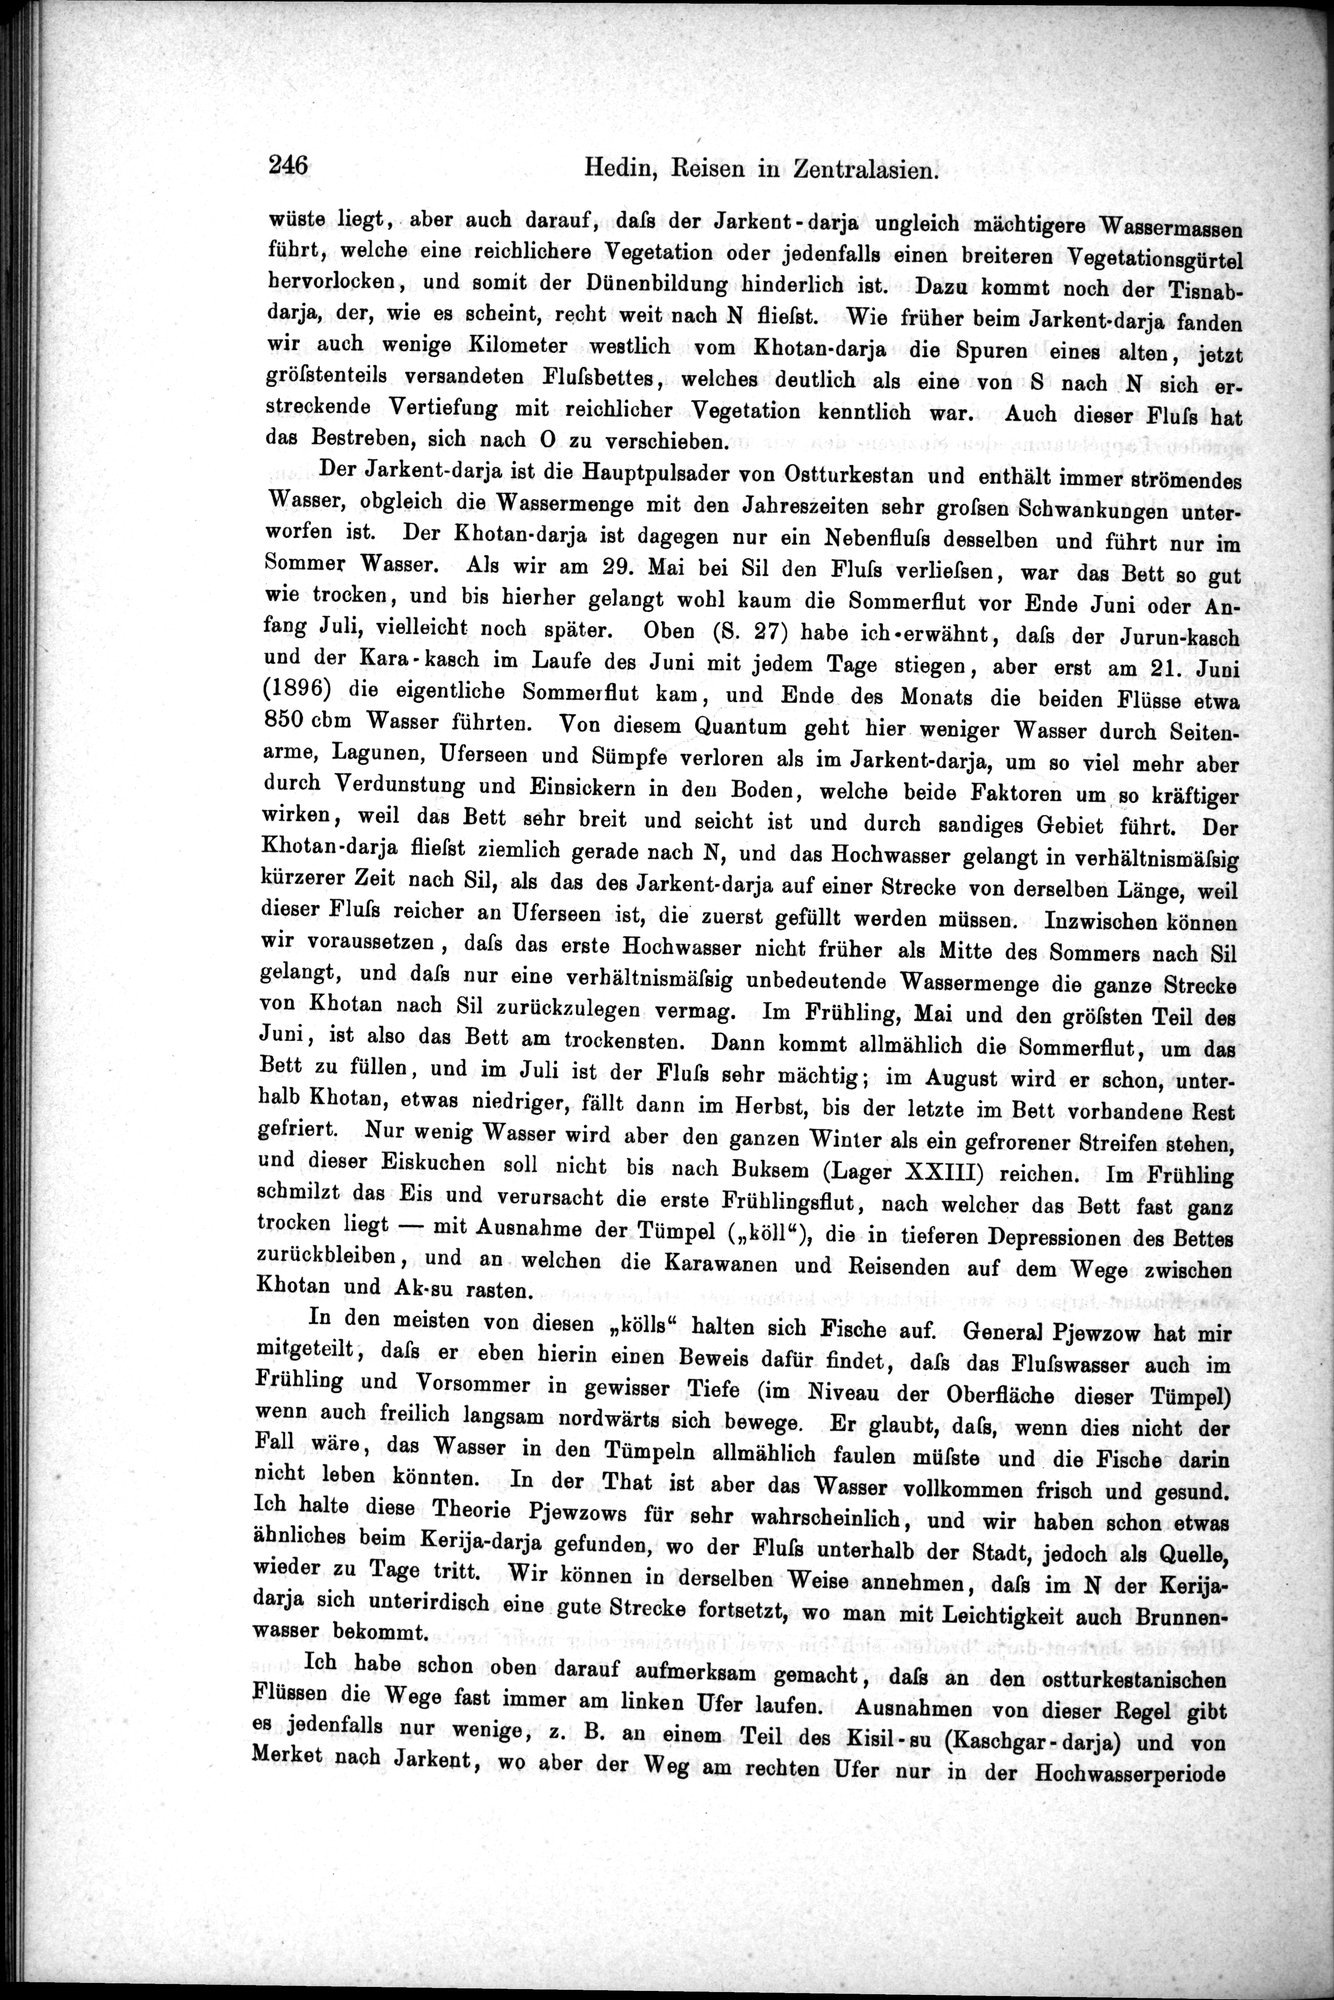 Die Geographische-Wissenschaftlichen Ergebnisse meiner Reisen in Zentralasien, 1894-1897 : vol.1 / Page 258 (Grayscale High Resolution Image)